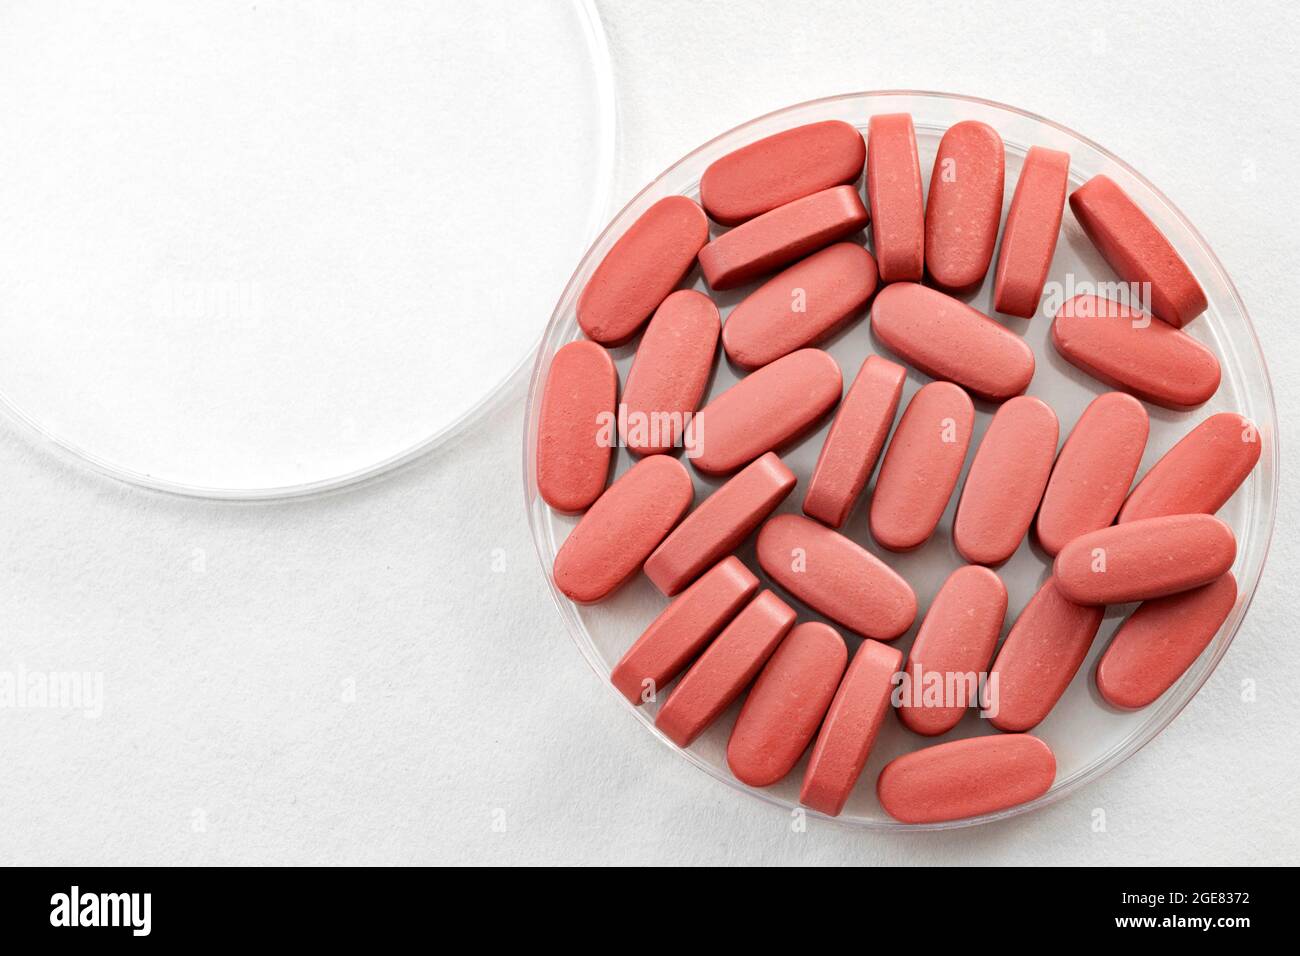 Laboratorio farmaceutico e concetto di ricerca farmaceutica con pillole mediche rosa in una piastra Petri isolata su bianco con spazio di copia Foto Stock